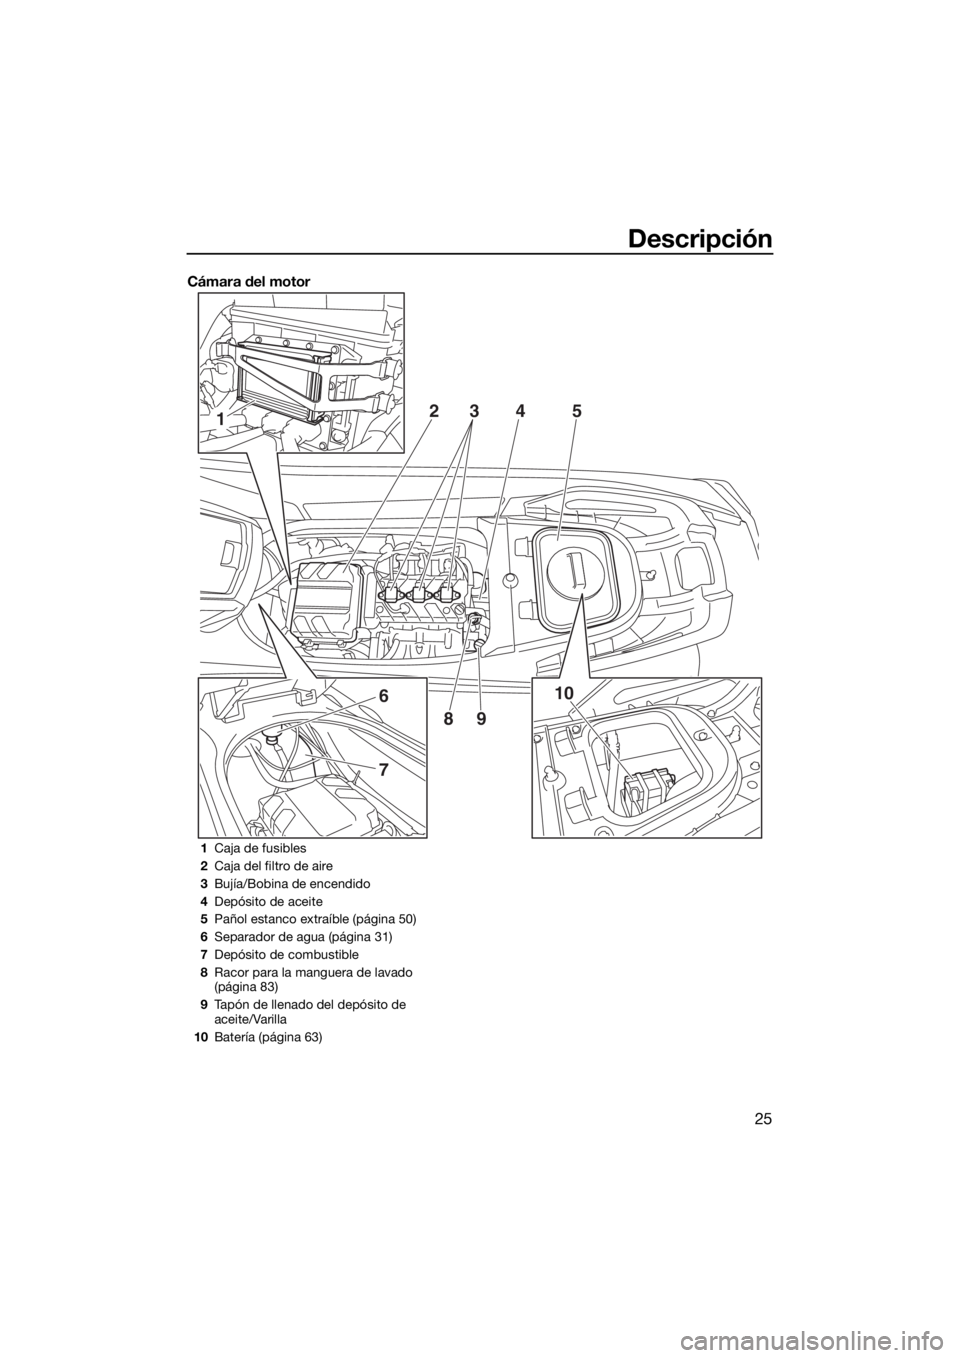 YAMAHA VX-C 2019  Manuale de Empleo (in Spanish) Descripción
25
Cámara del motor
1
6
7
10 2
345
89
1Caja de fusibles
2Caja del filtro de aire
3Bujía/Bobina de encendido
4Depósito de aceite
5Pañol estanco extraíble (página 50)
6Separador de ag